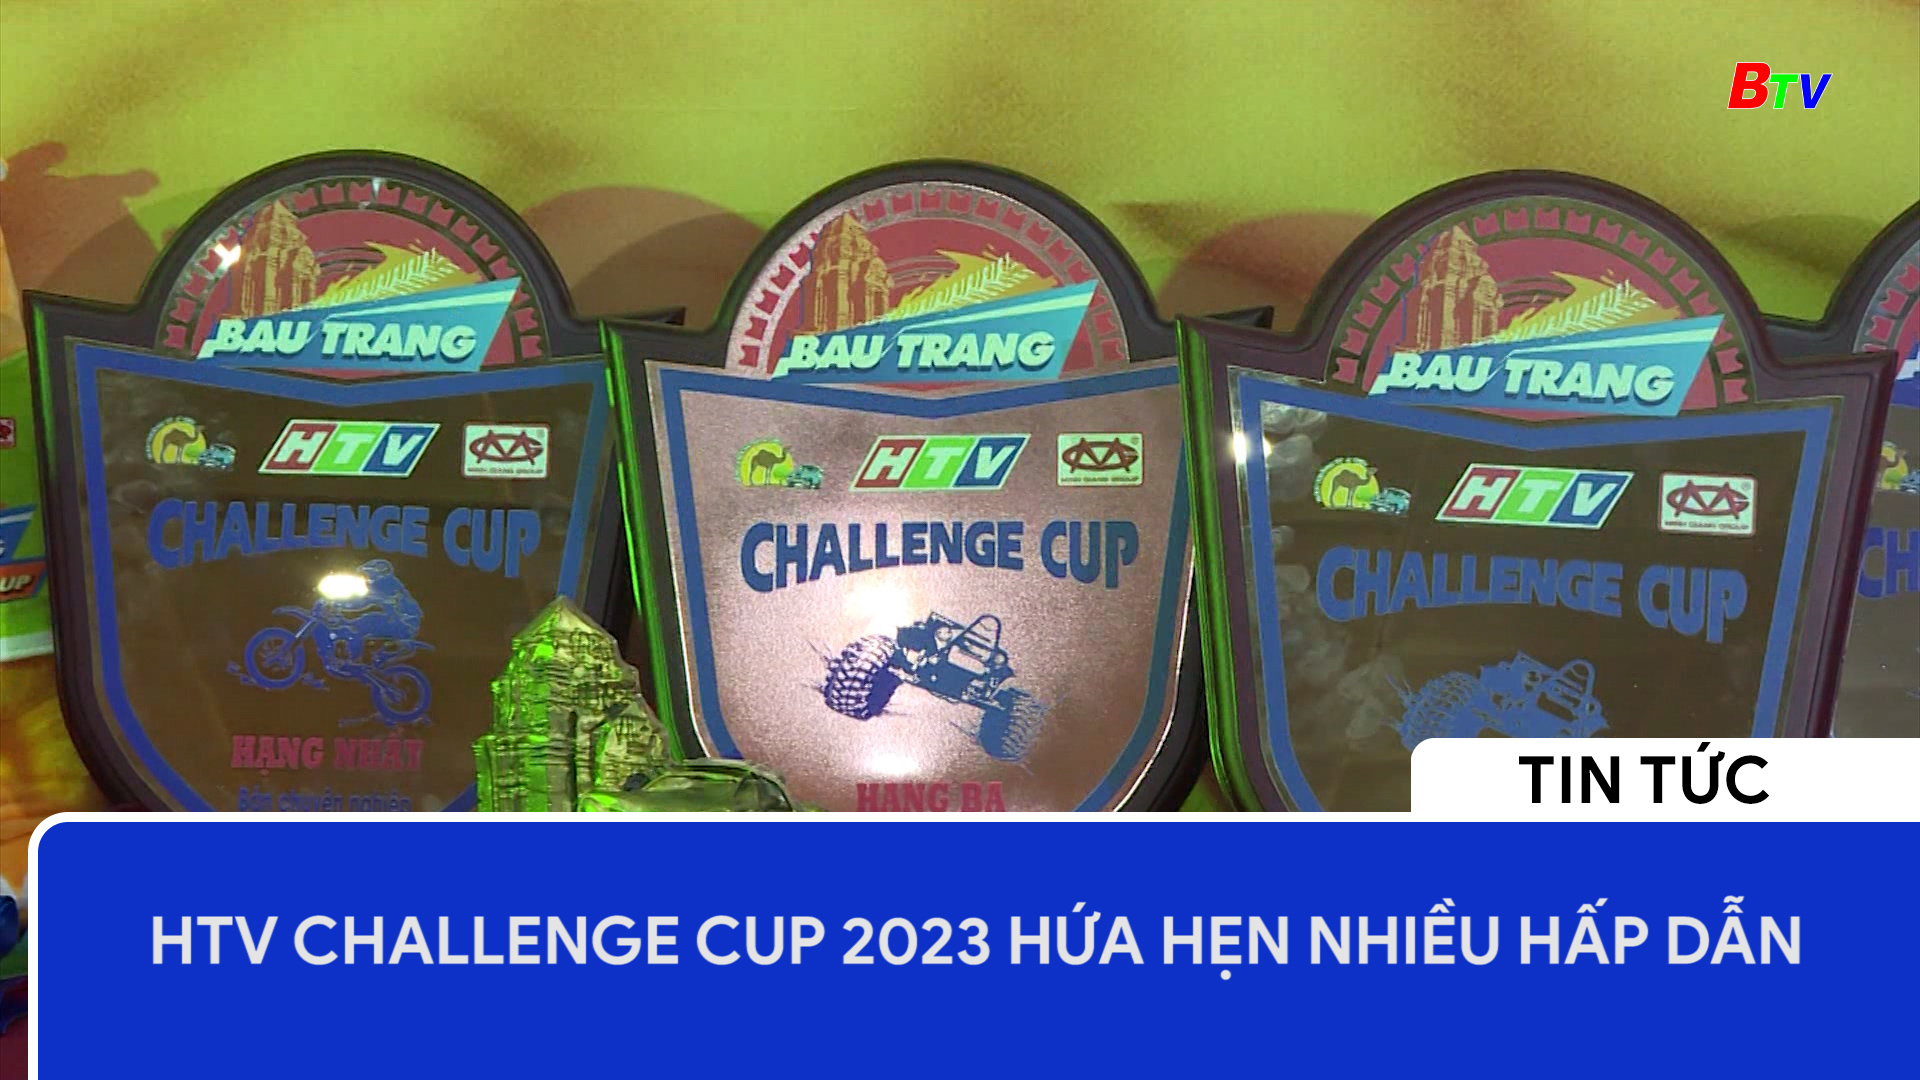 HTV Challenge Cup 2023 hứa hẹn nhiều hấp dẫn